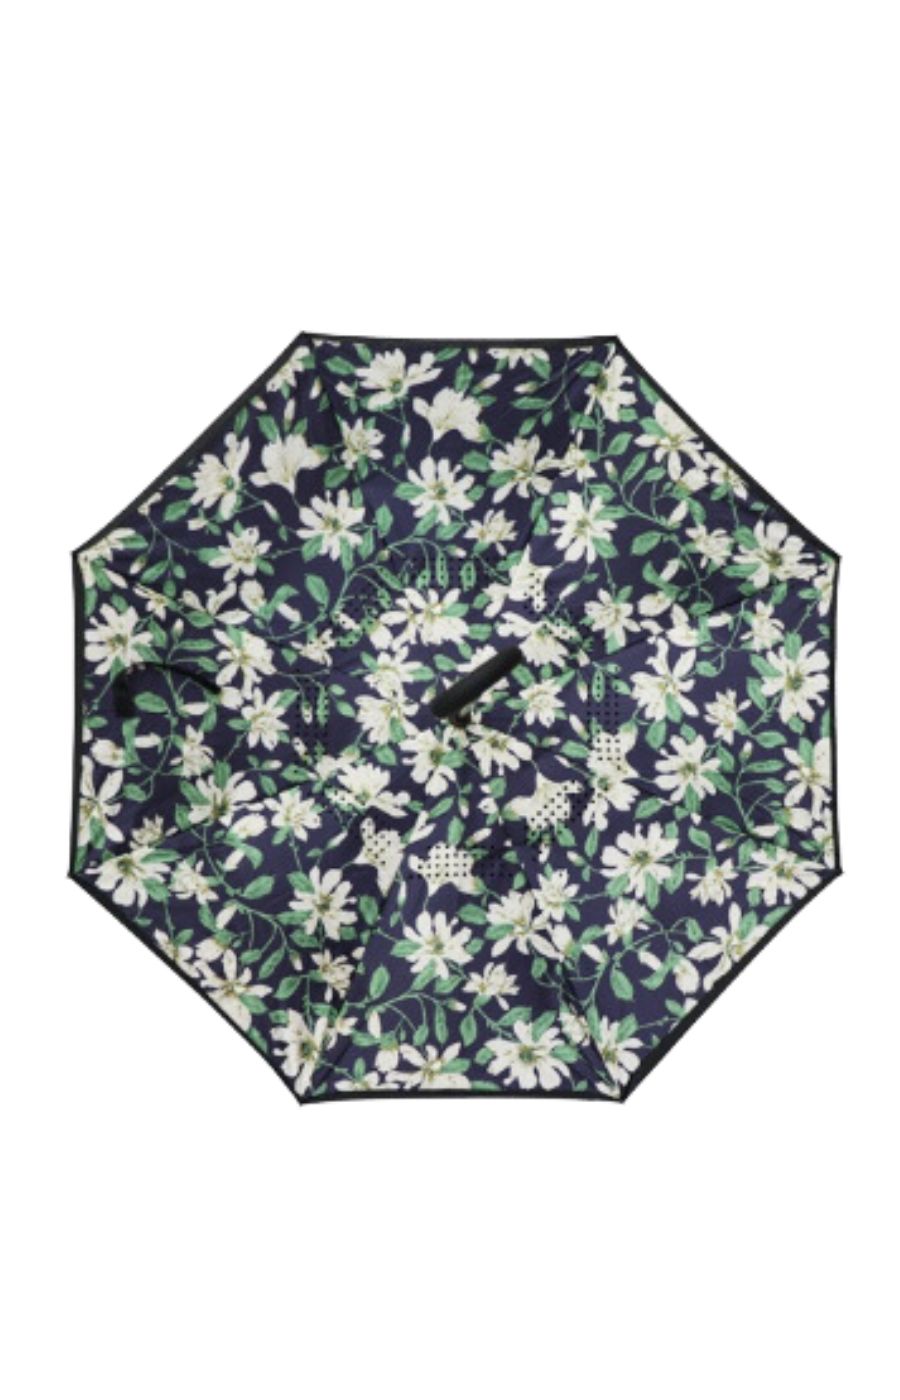 Capricorn Inverted Umbrella